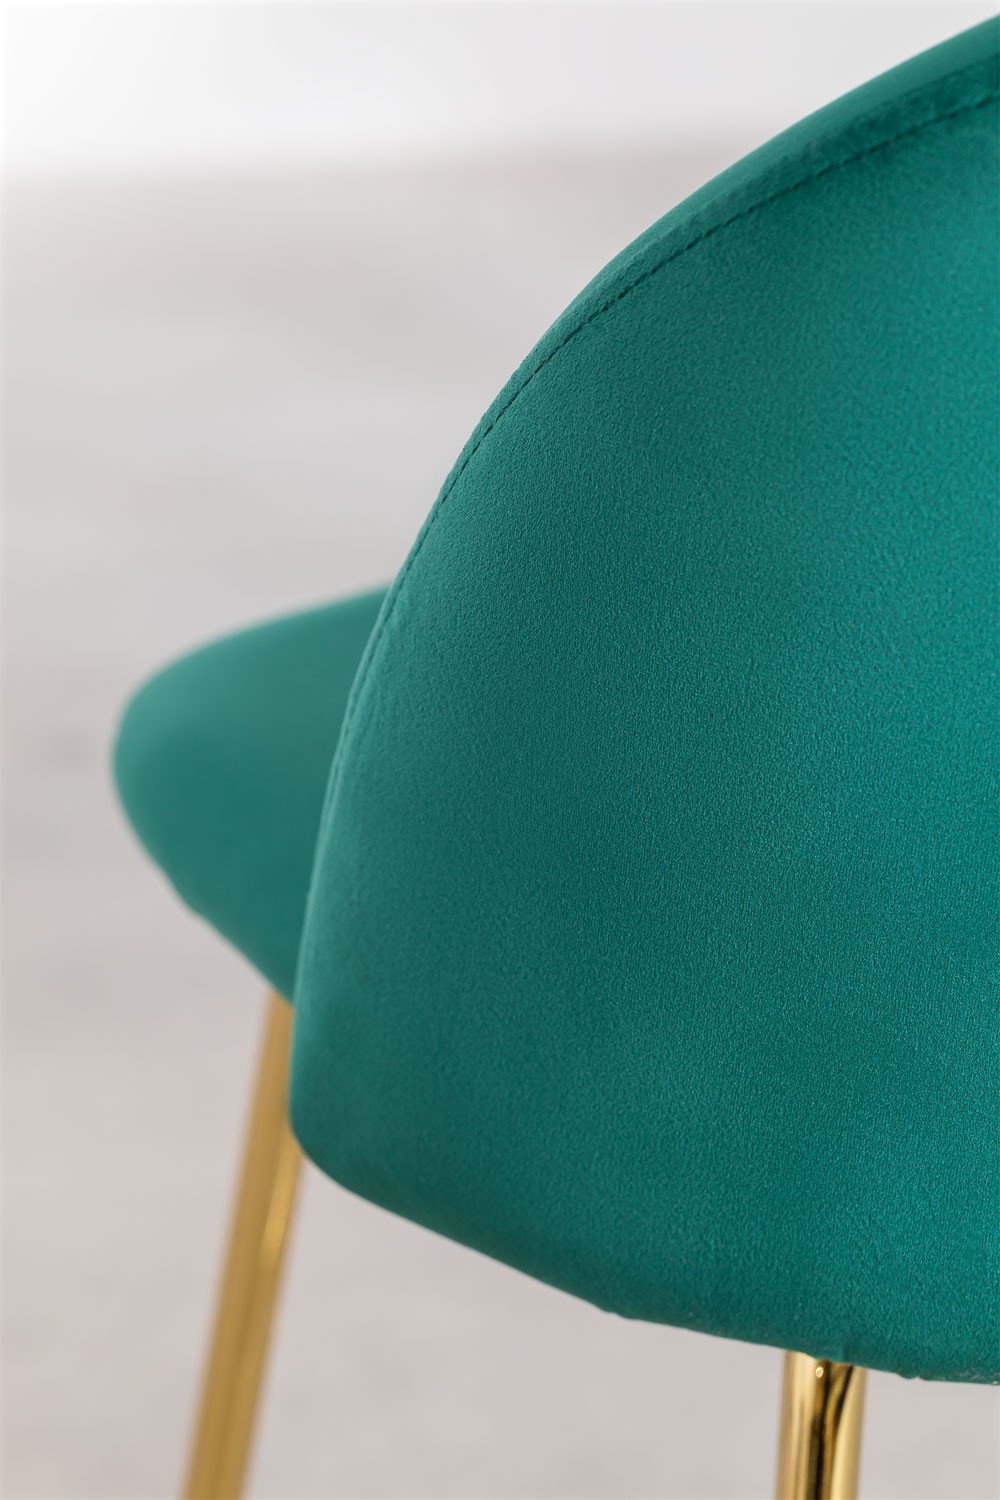 Taburete Alto en Terciopelo Kana Design ↑75 cm Verde Jungla Dorado -  SKLUM